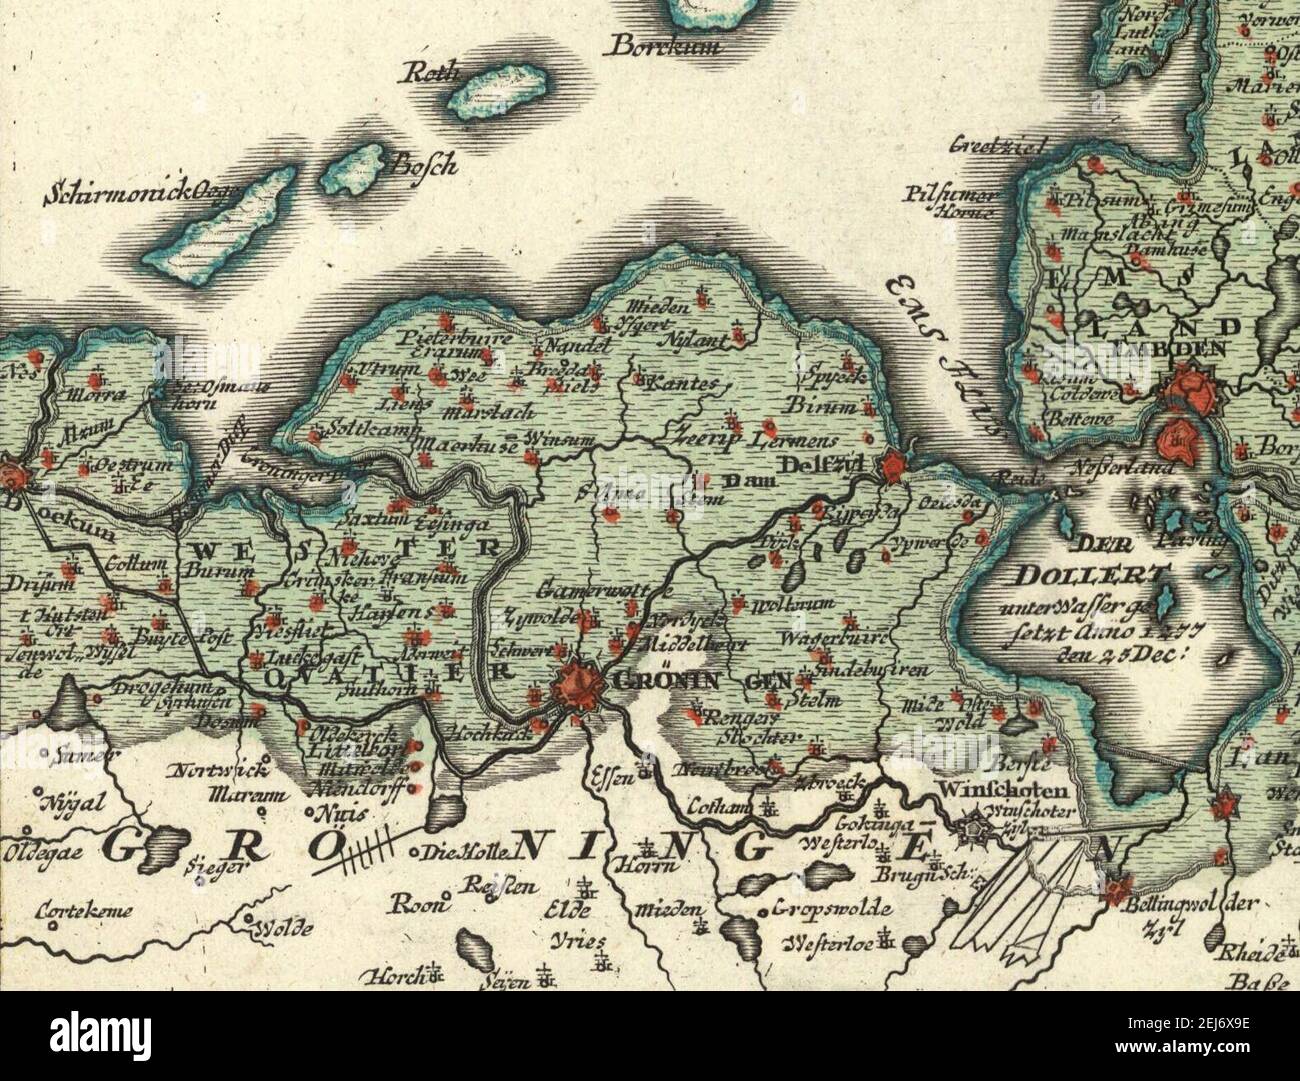 Uitsnede van de kaart van Johann Baptist Homann uit 1720 van de Kerstvloed met de overstroomde gebieden in Groningen. Stock Photo